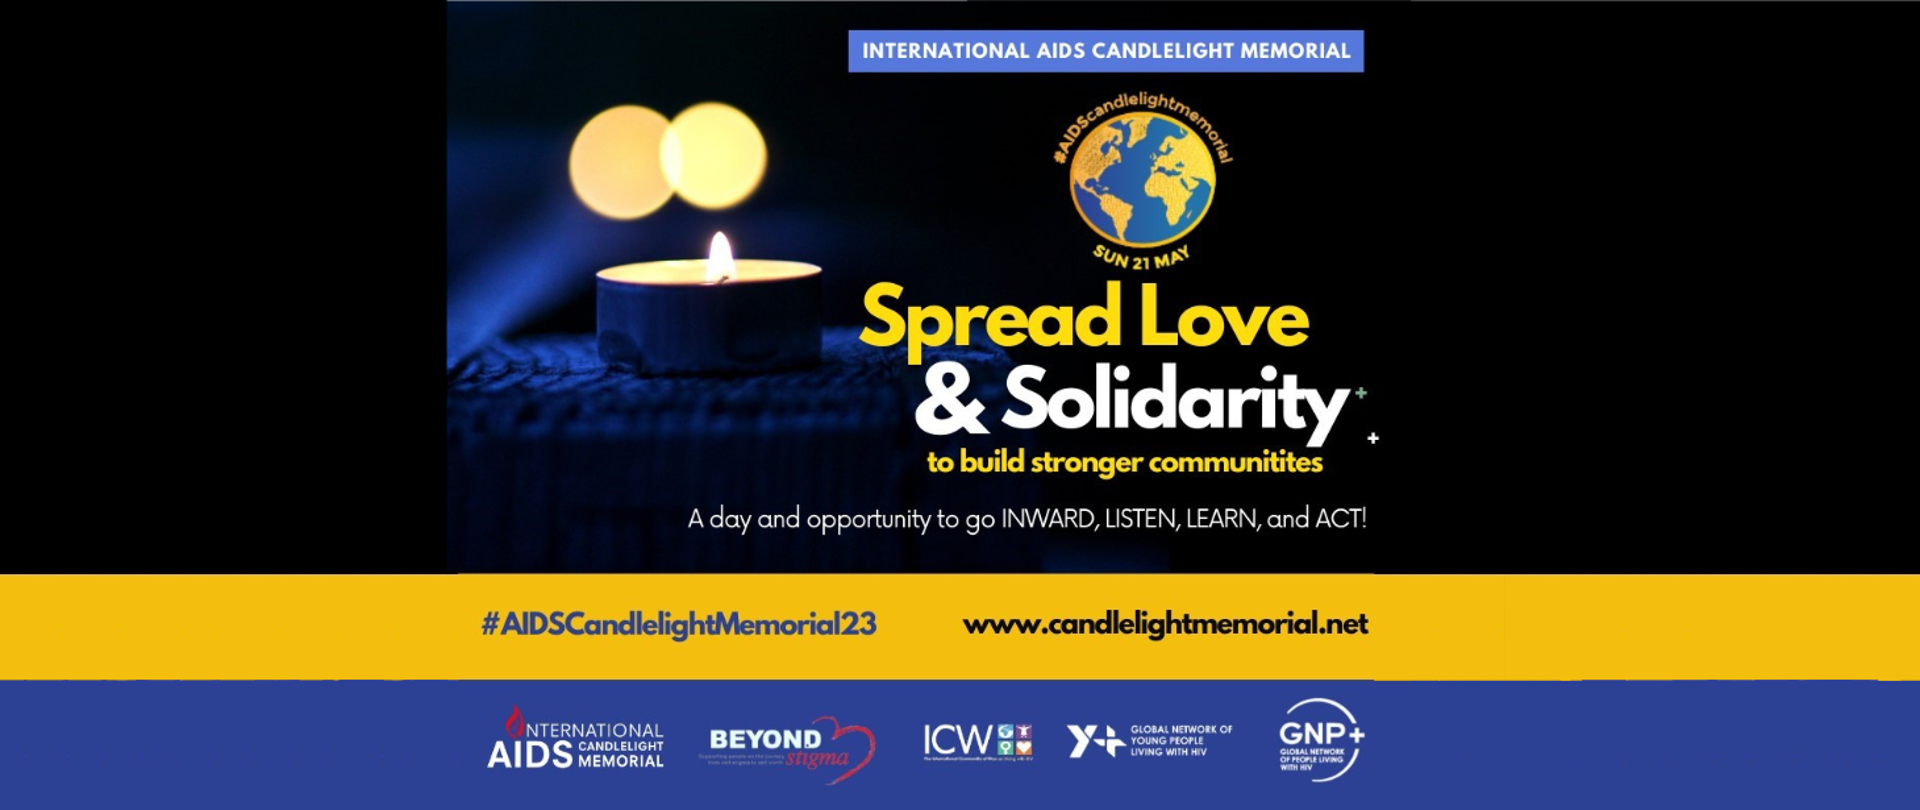 Międzynarodowy Dzień Pamięci o Zmarłych na AIDS – International AIDS Candlelight Memorial
21 maja 2023
